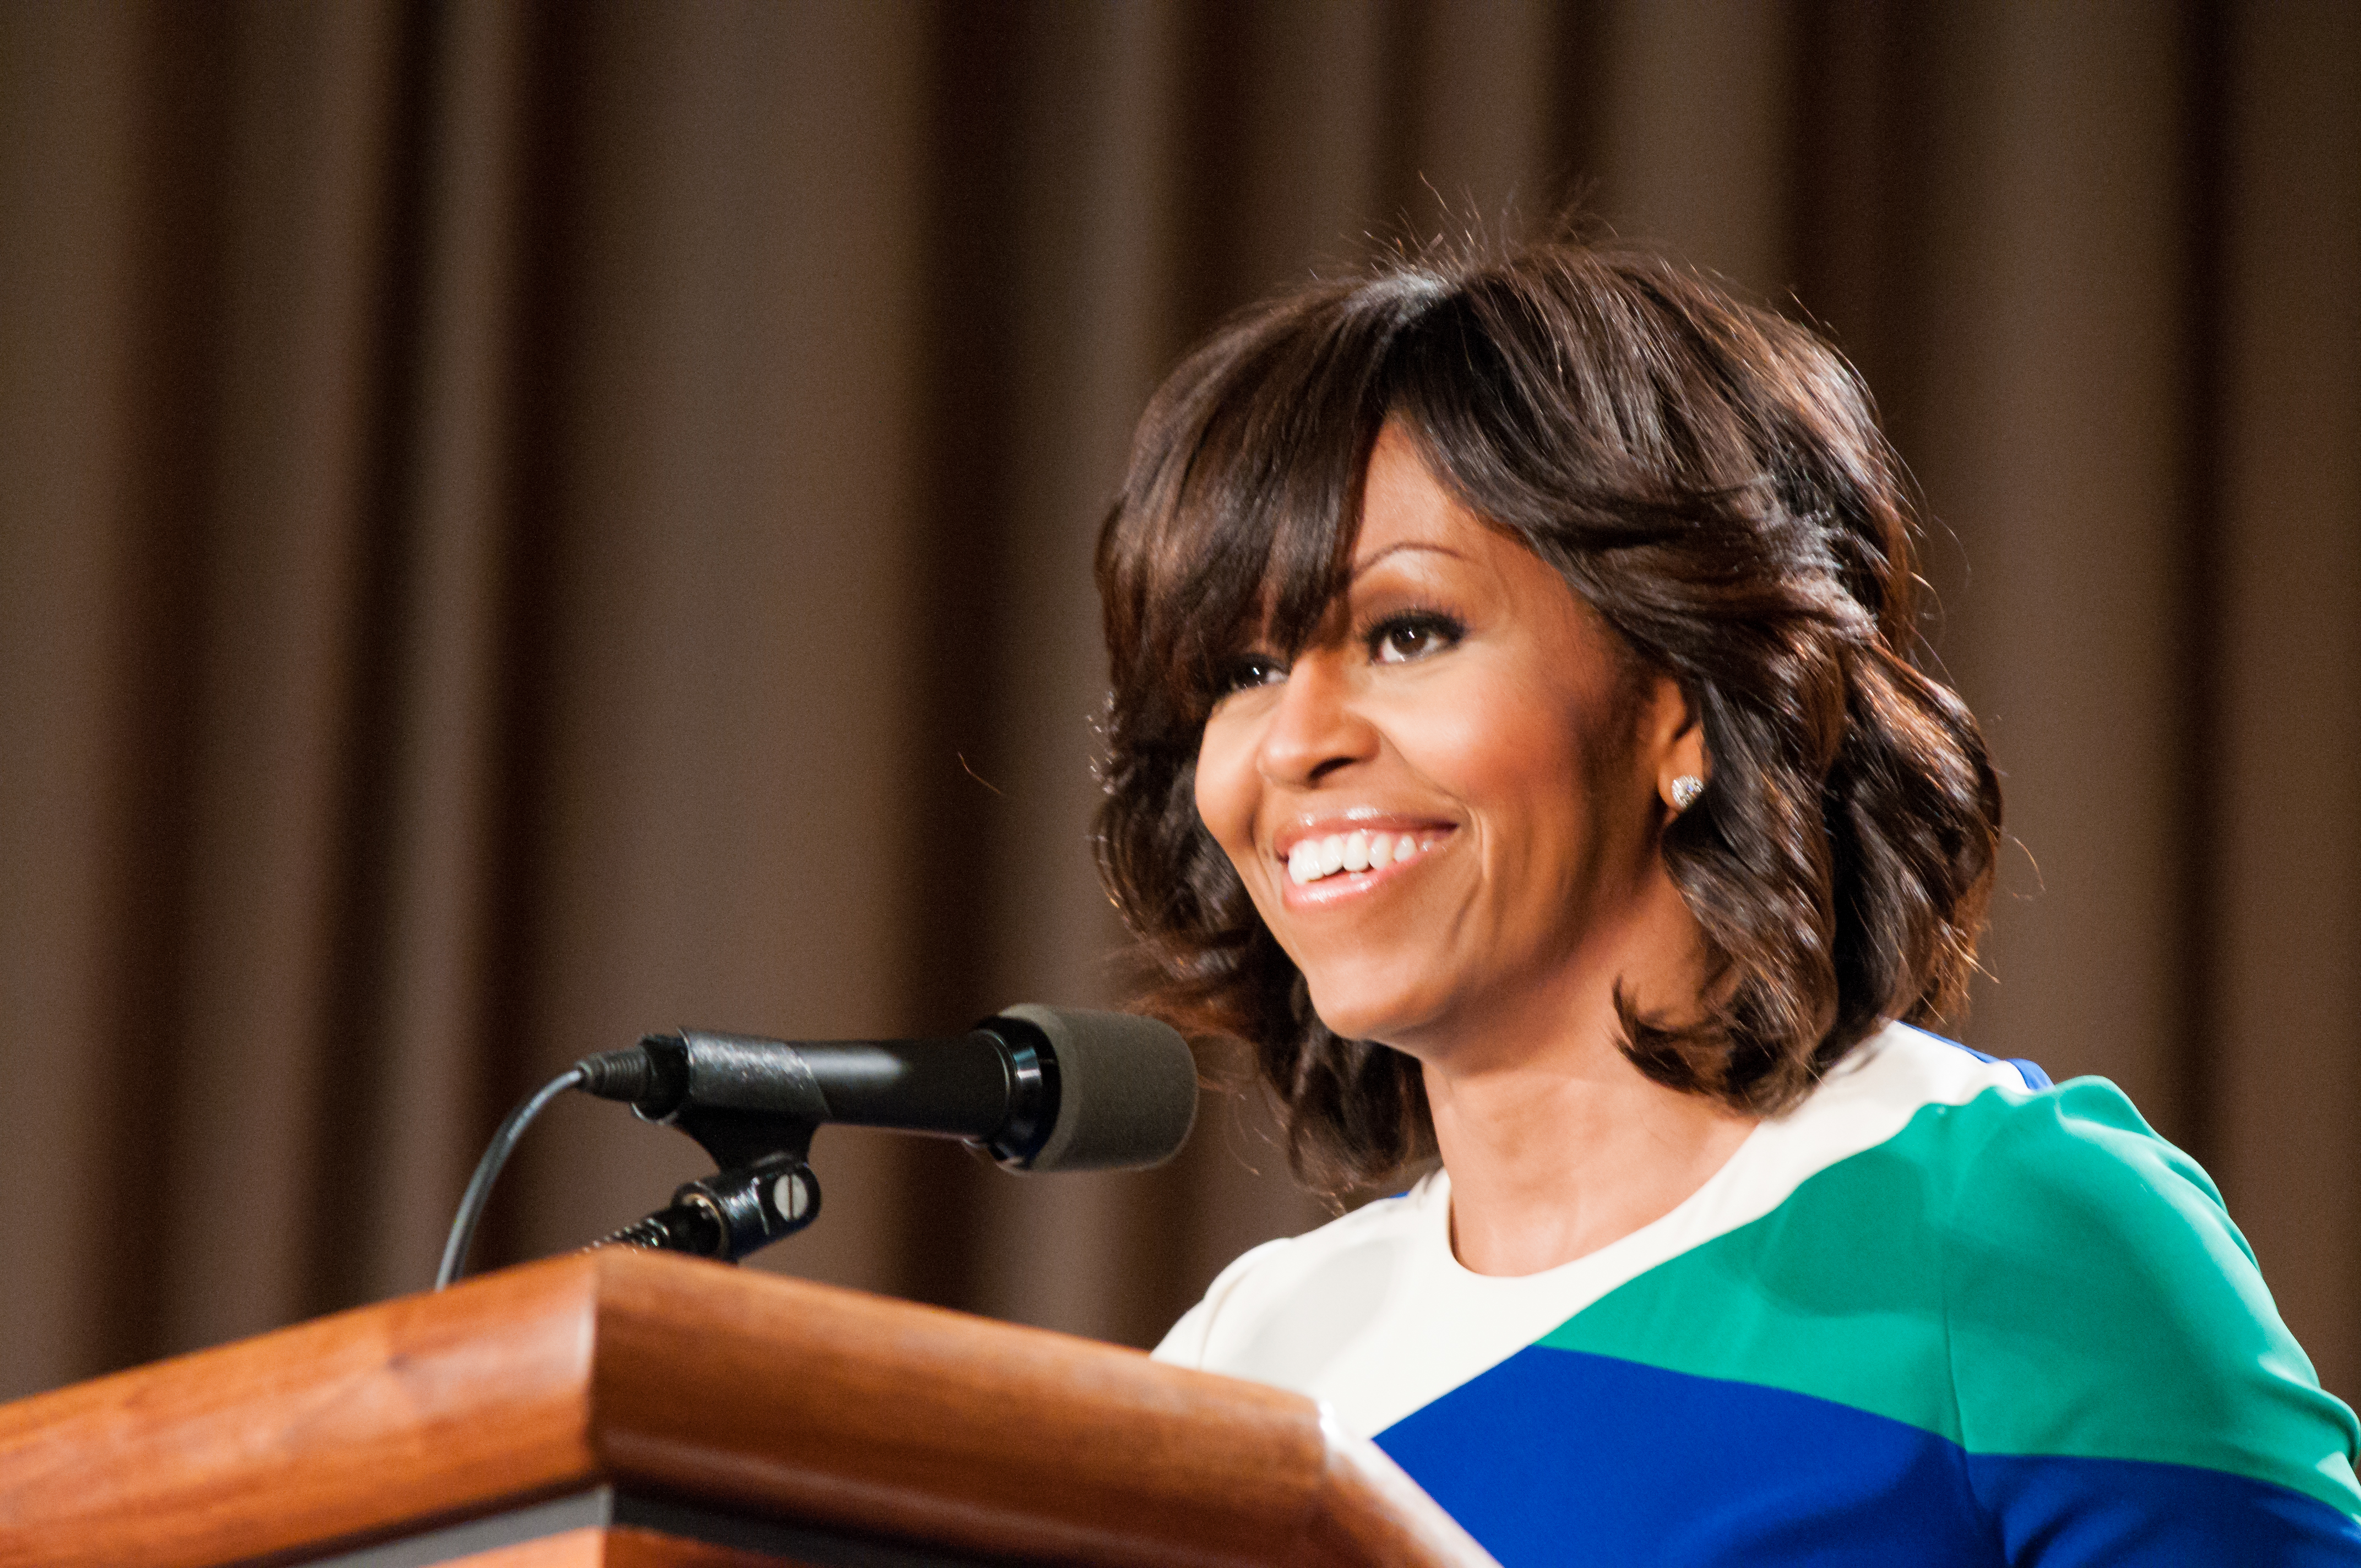 Michelle Obama visita Toronto en noviembre en conferencia para mujeres jóvenes